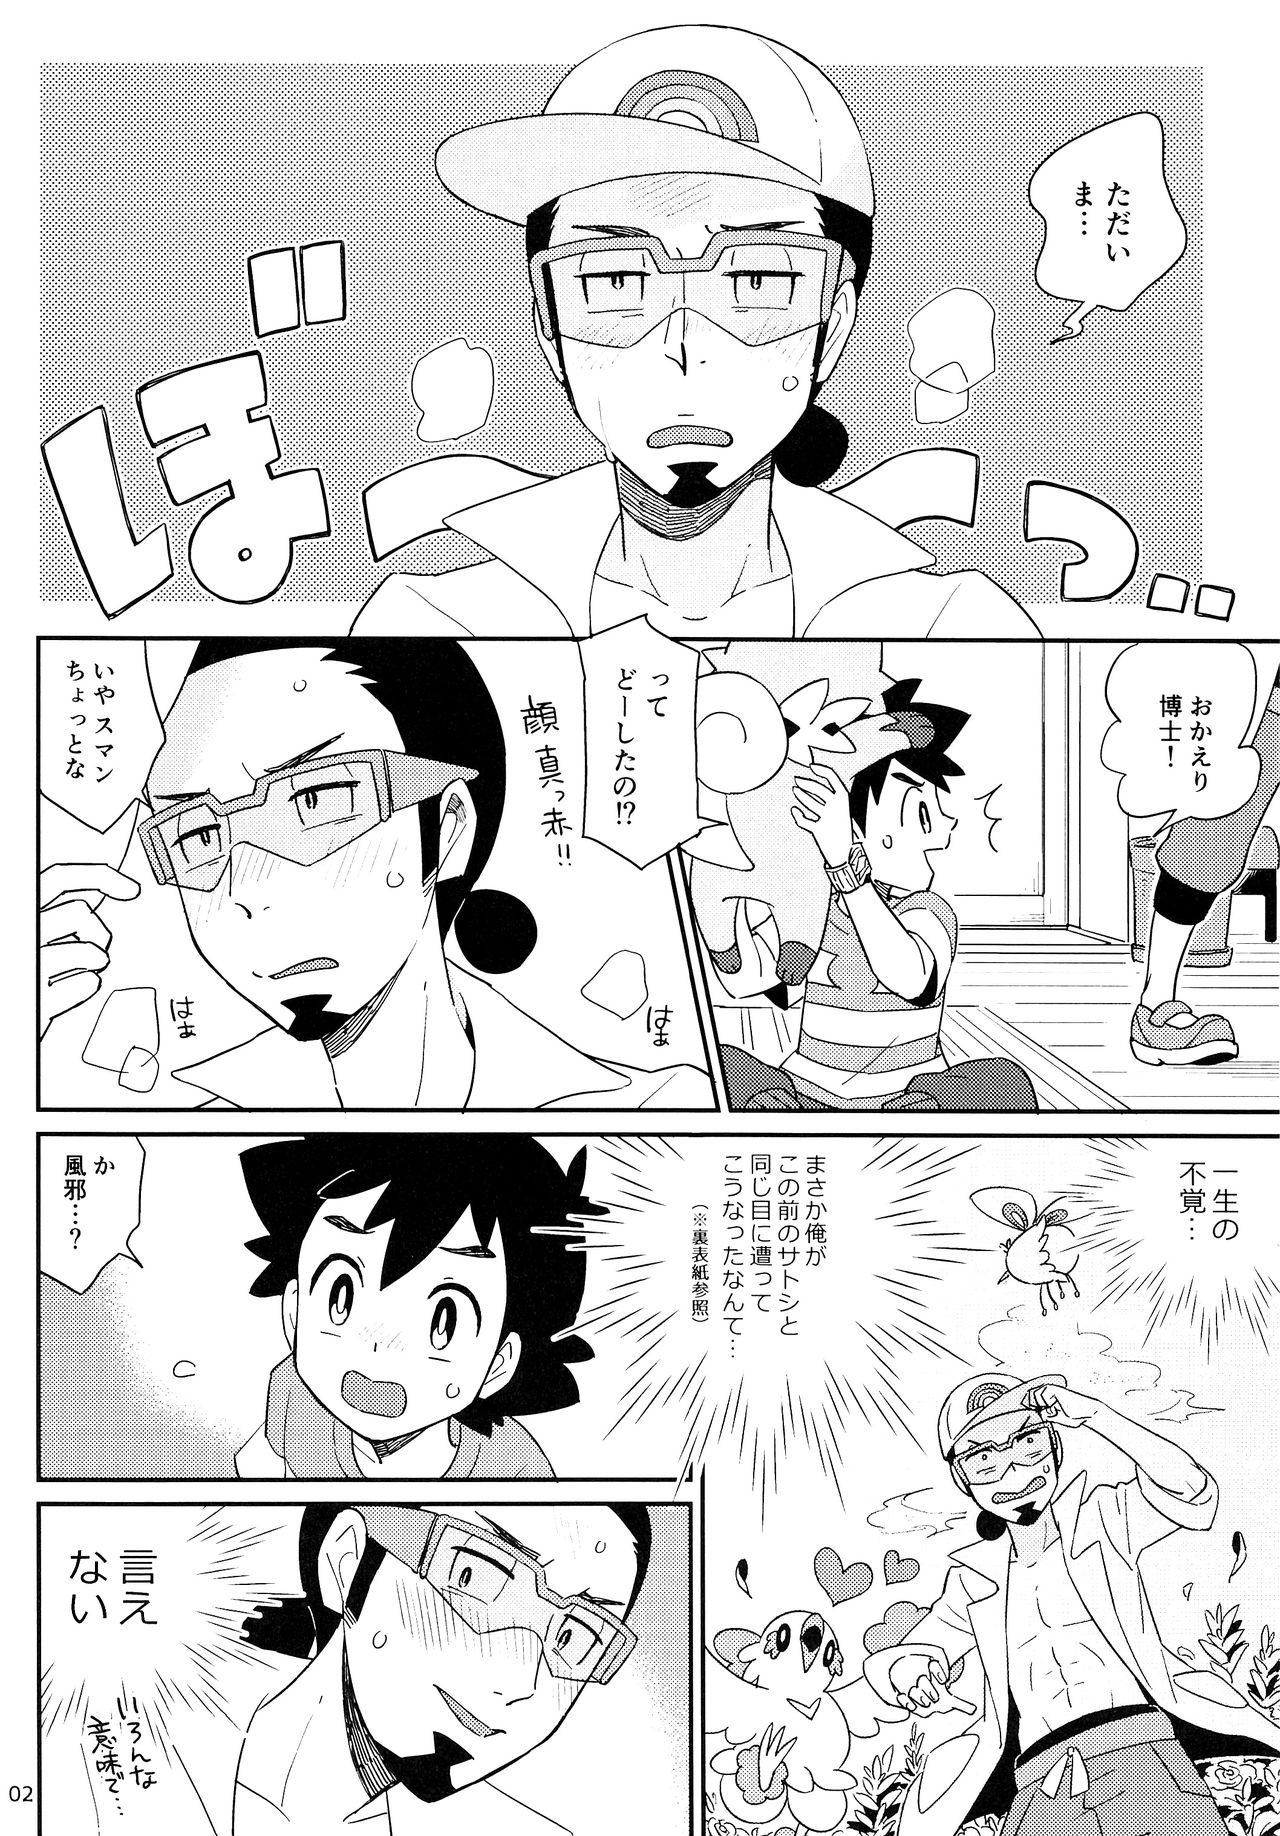 Kink Okaerinasai no Sono Ato wa - Pokemon Small - Page 2